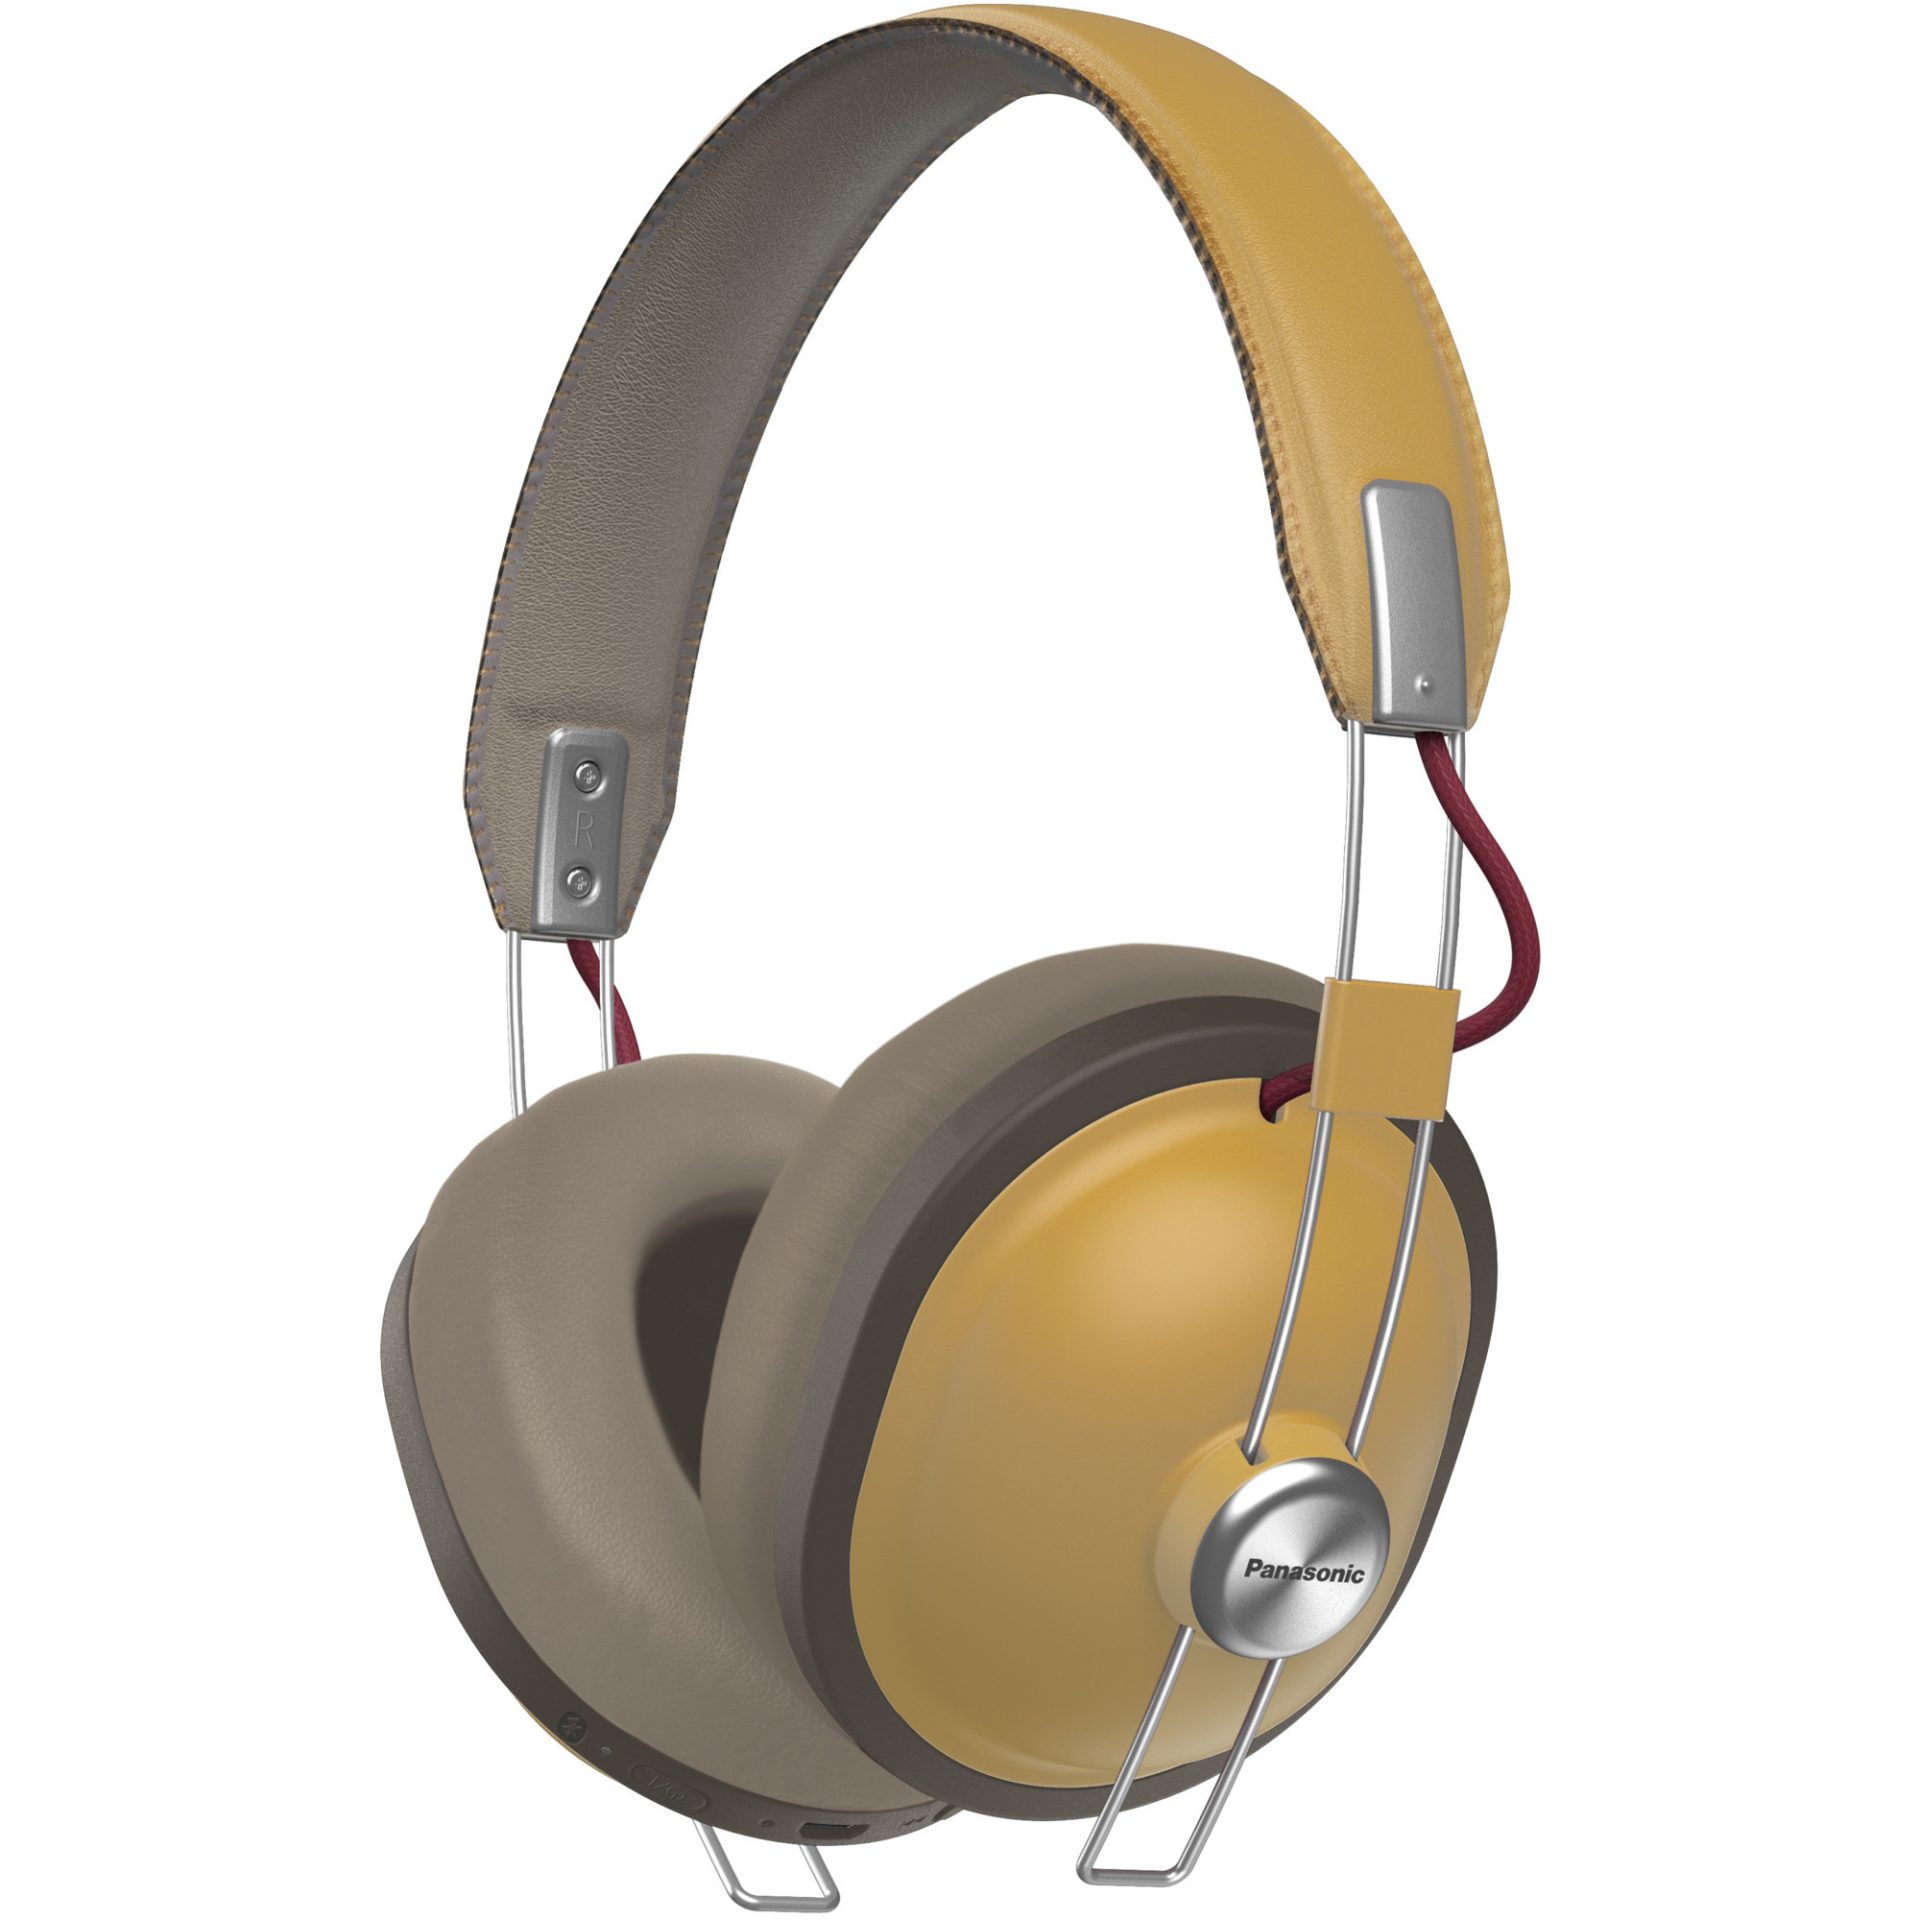 Panasonic RP-HTX80 bezdrátová Bluetooth sluchátka přes uši v retro stylu (40mm měniče, acoustic bass control filtr, 24h přehrávání), béžová